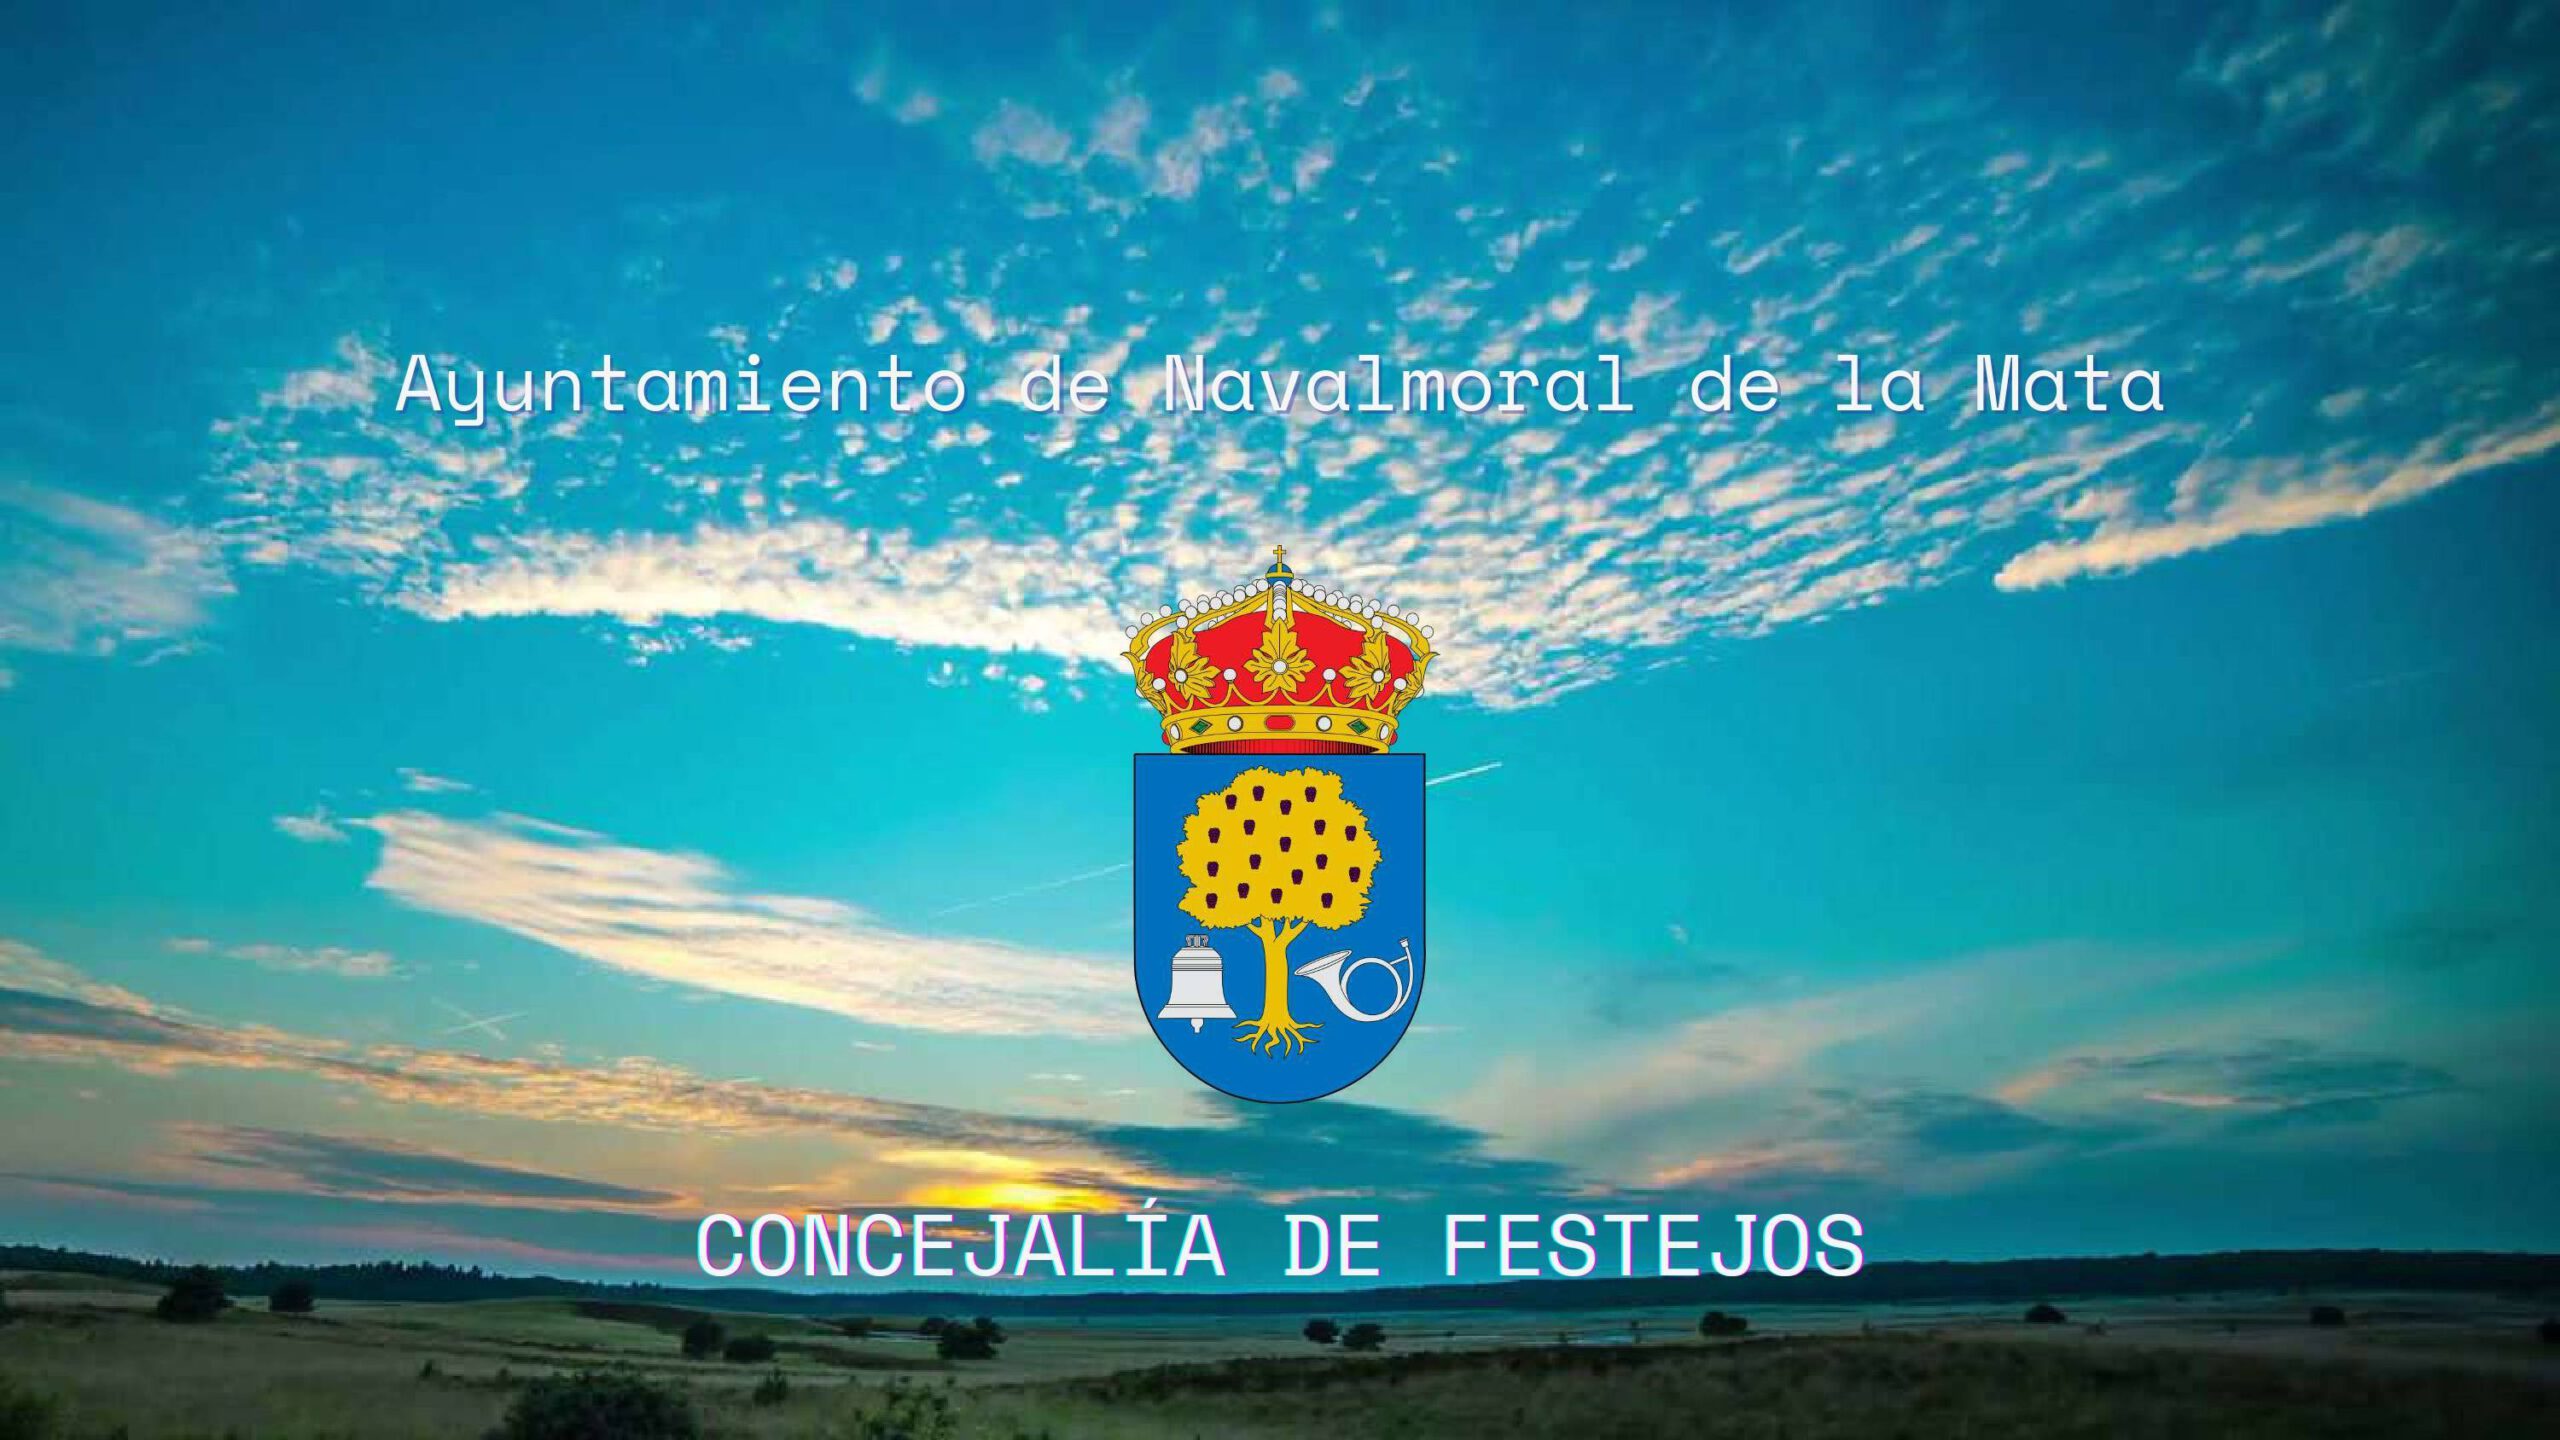 San Miguel (2021) - Navalmoral de la Mata (Cáceres) 8